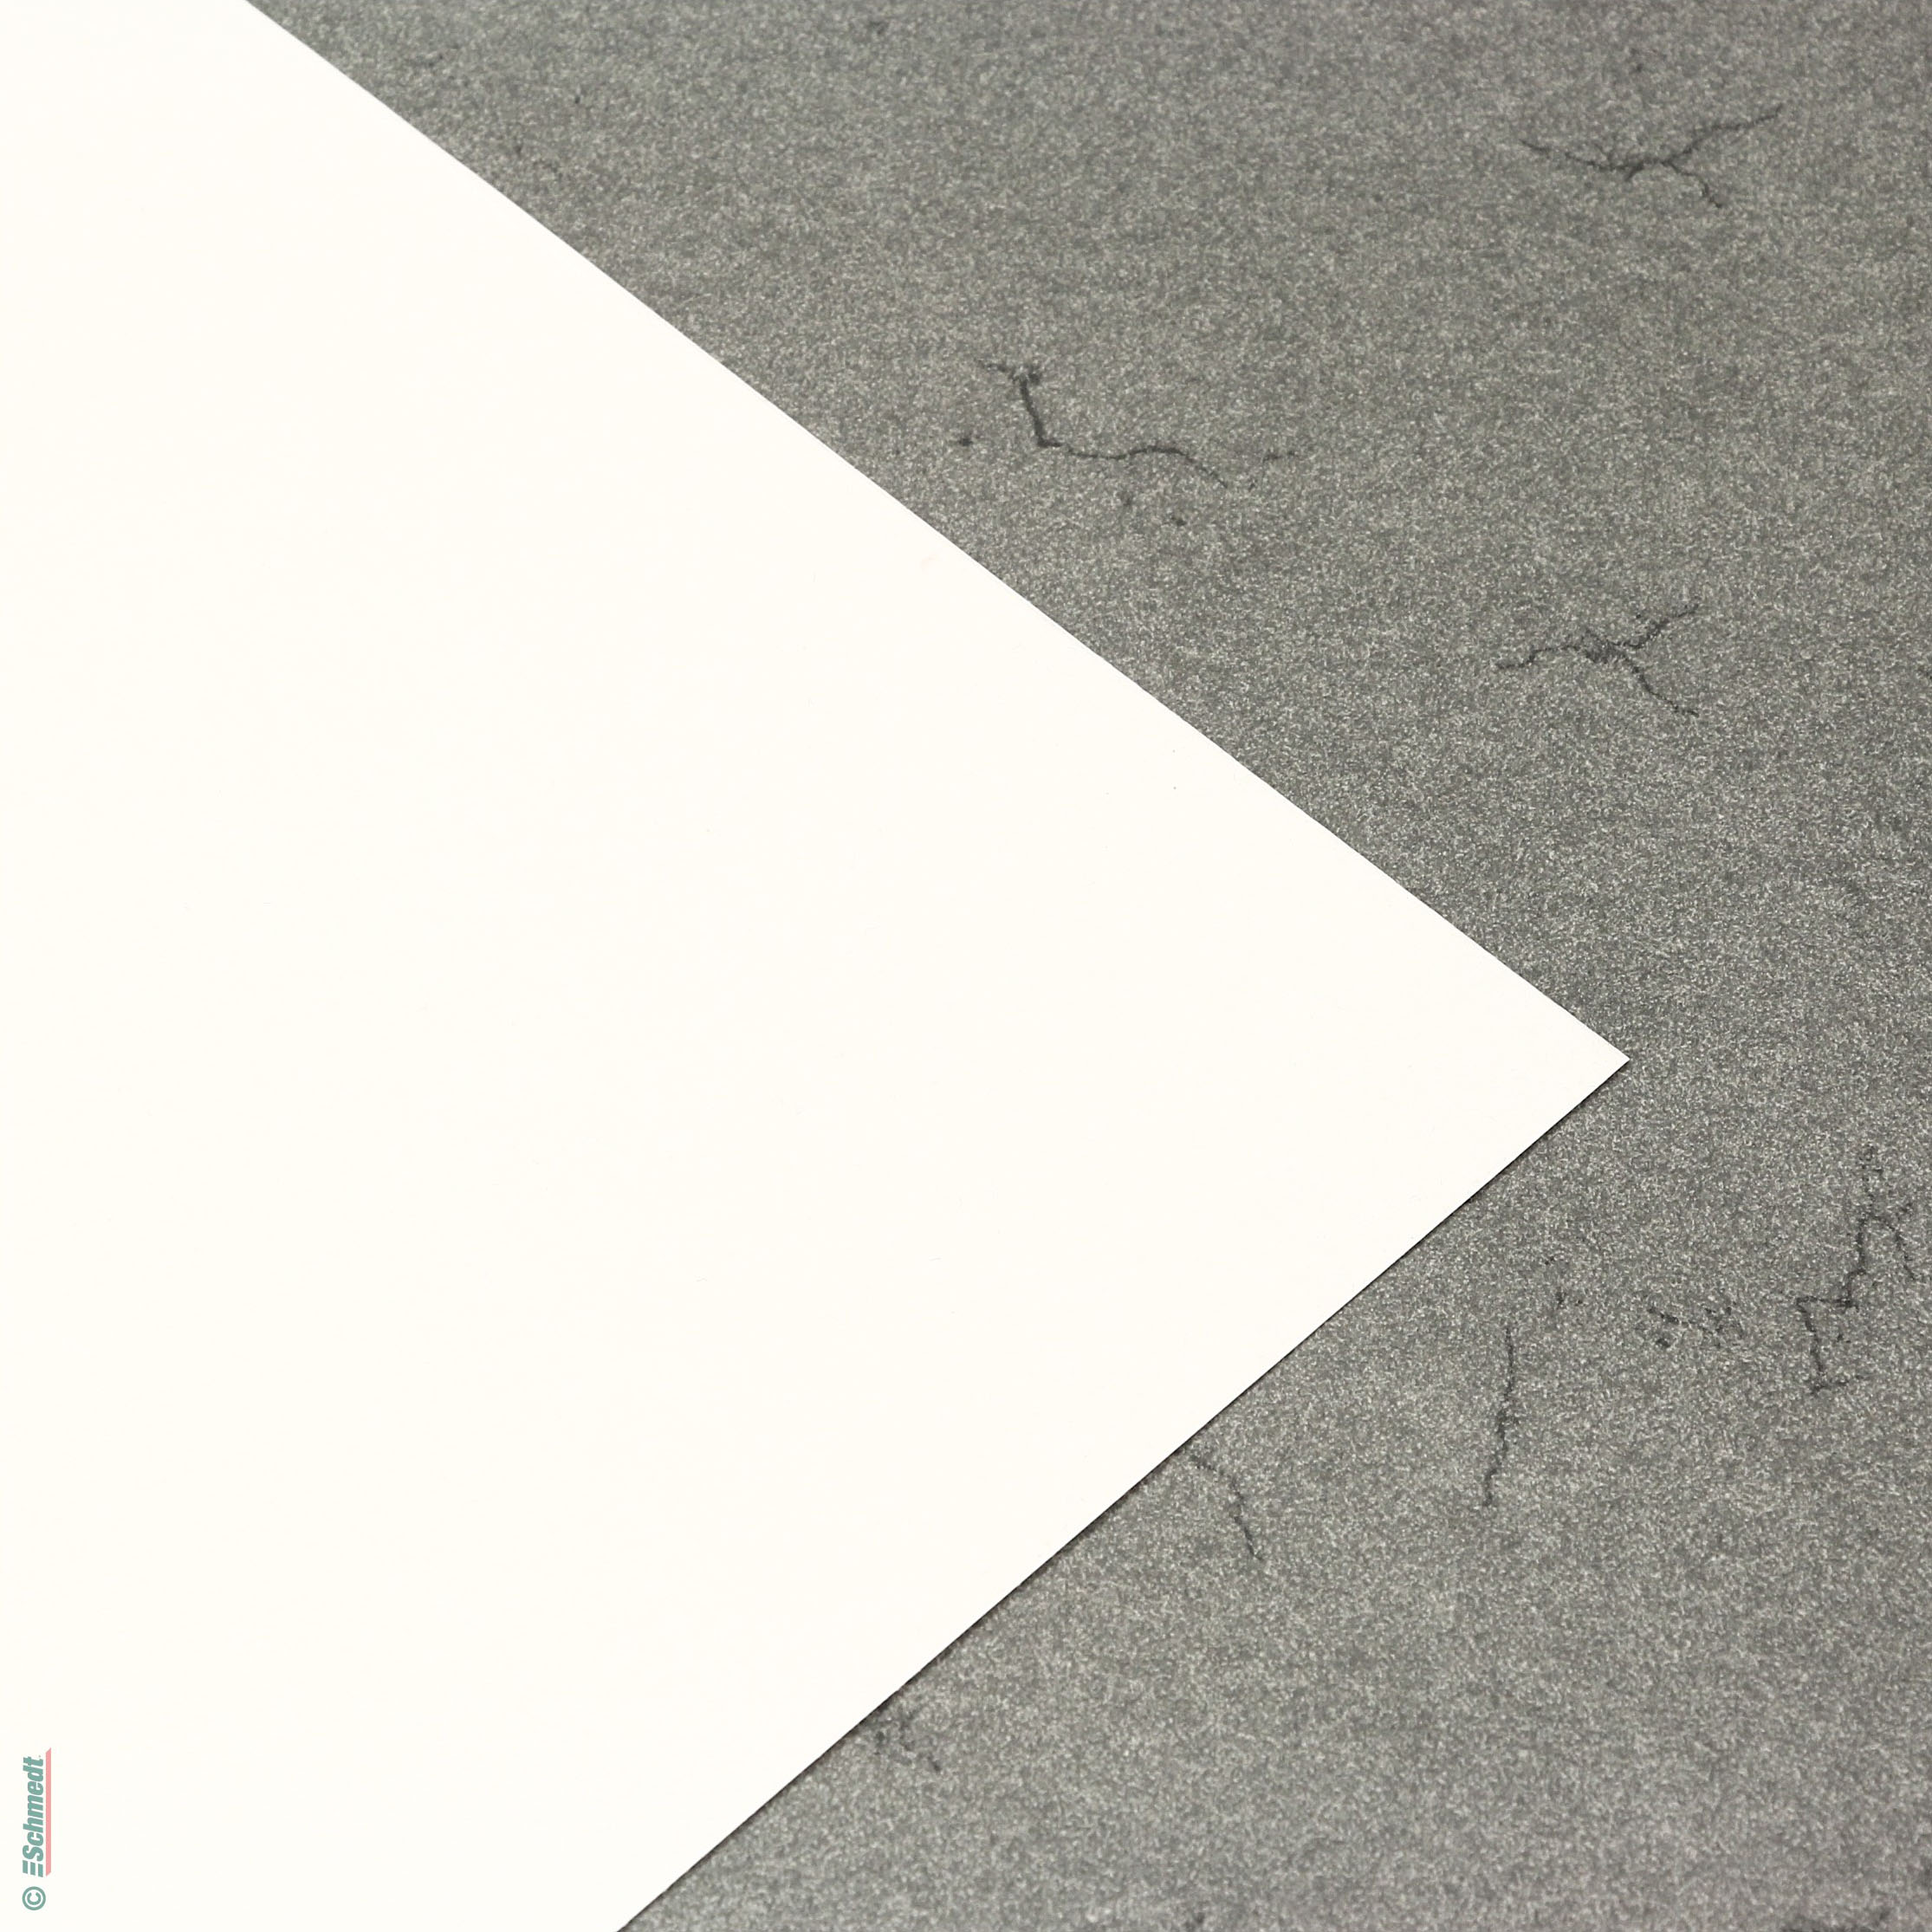 Papel de silicona - una cara laminada - Blanco - Formato: 100 x 70 cm - sentido transversal - embalaje de pinturas y gráficos, como barrera ...